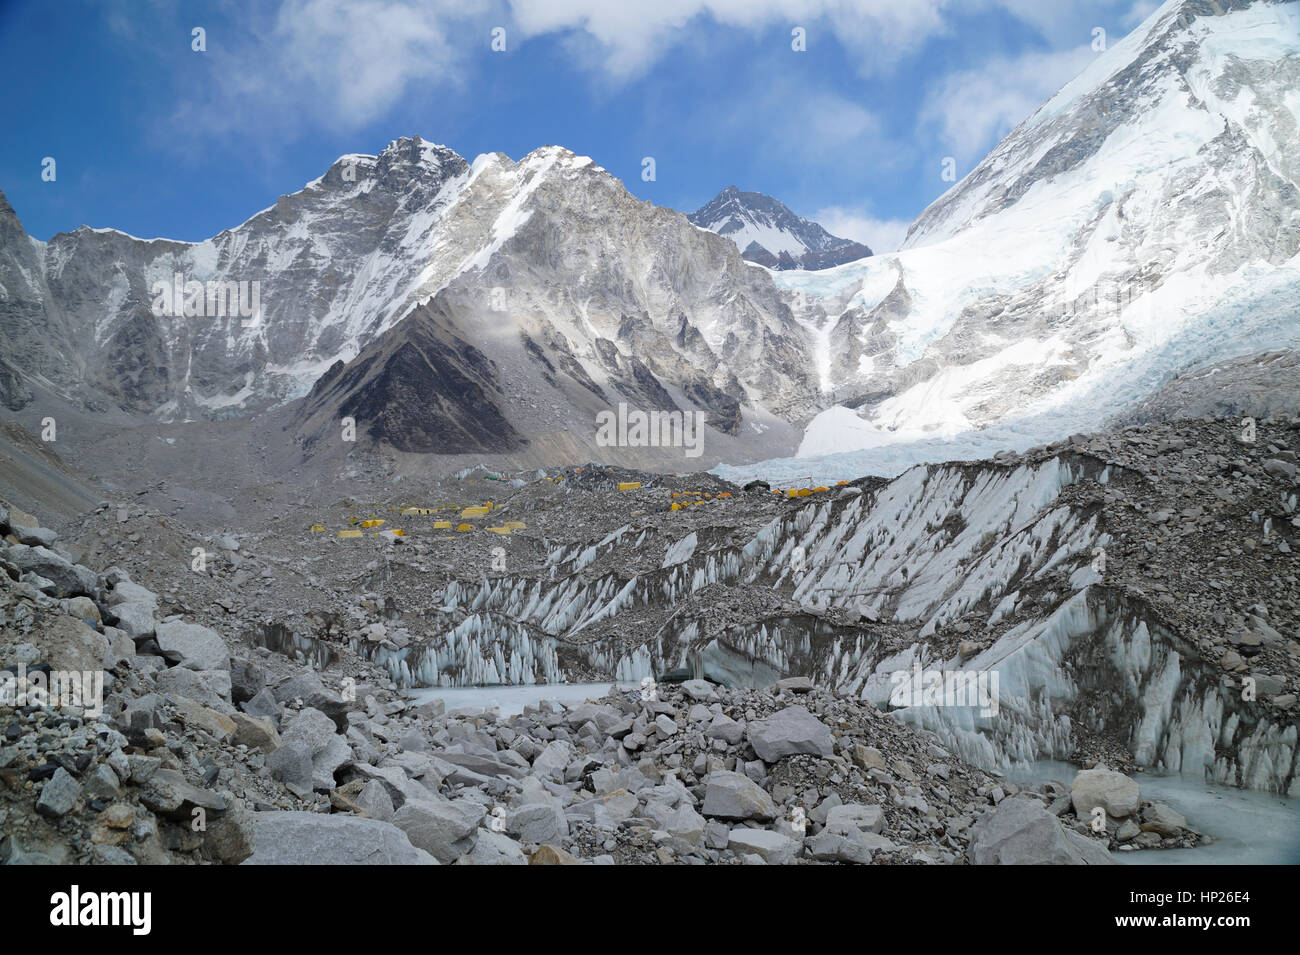 Everest Base Camp with Khumbu glacier Stock Photo